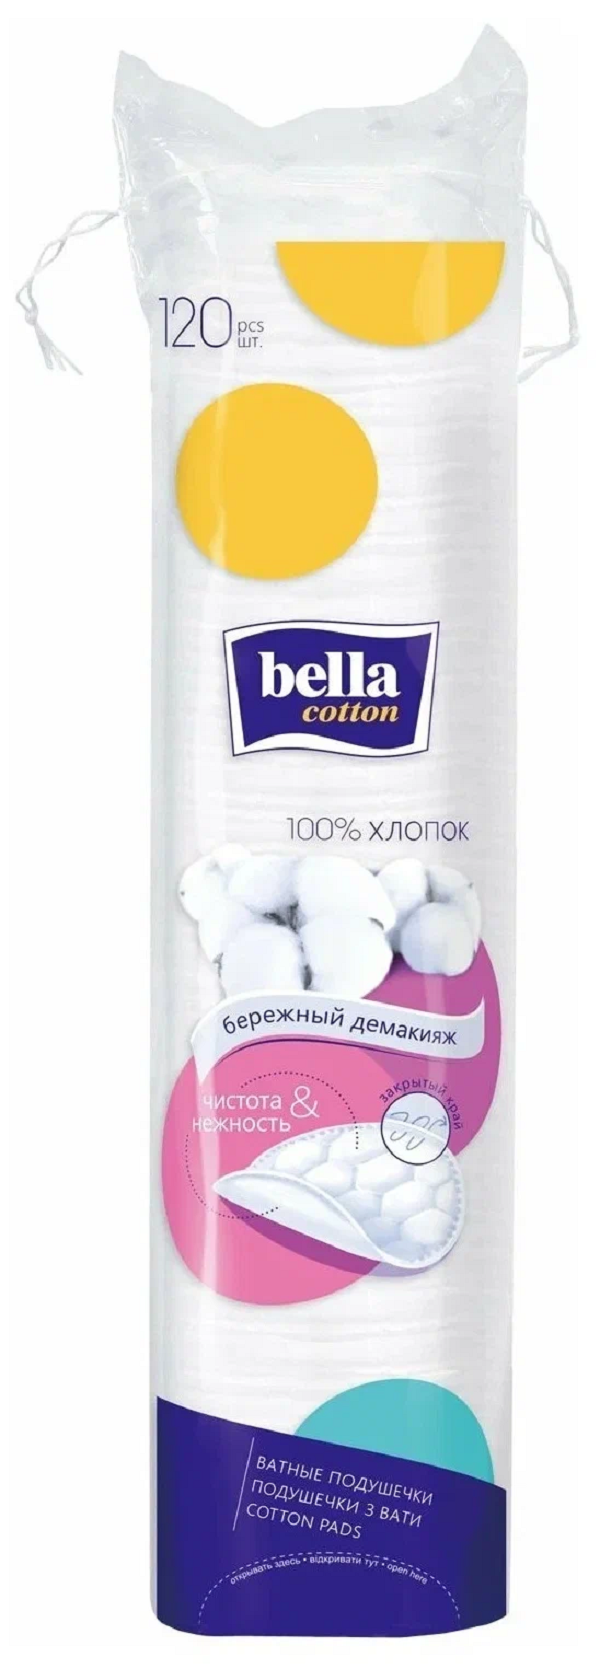 Диски ватные Bella Cotton хлопок, 120 шт. ватные диски marabu botanica зип пакет 100 шт х 3 уп